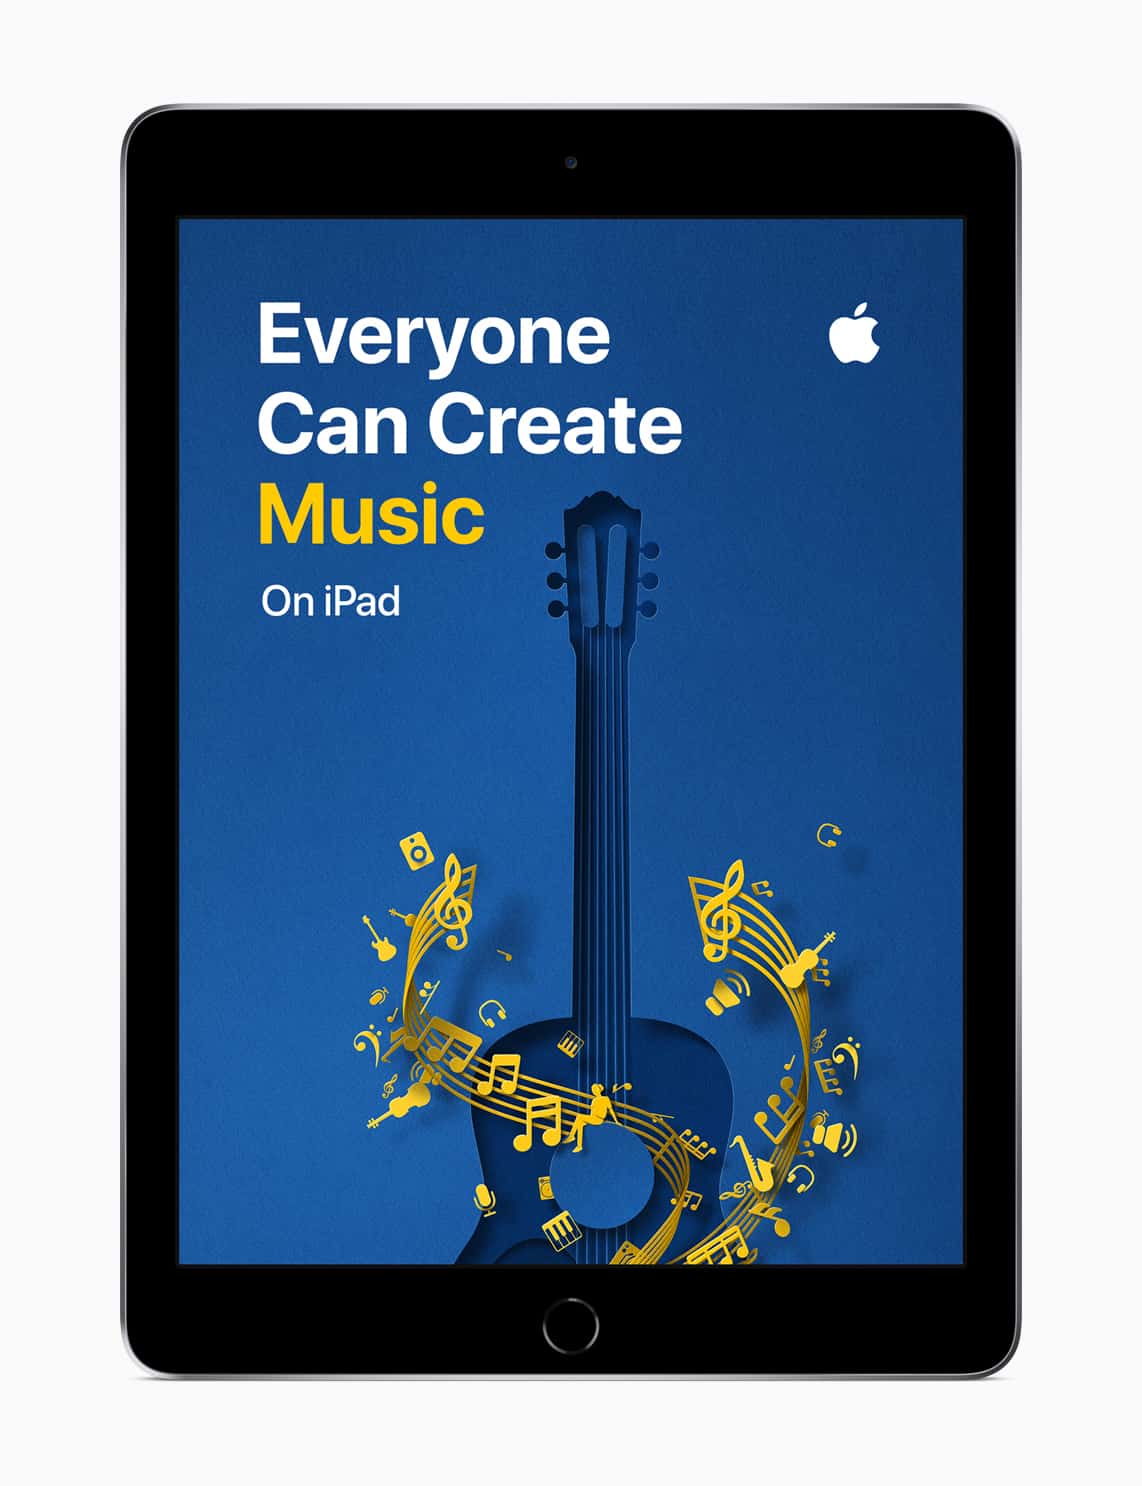 Apple iPad Everyone Can Create Music screen 09262018